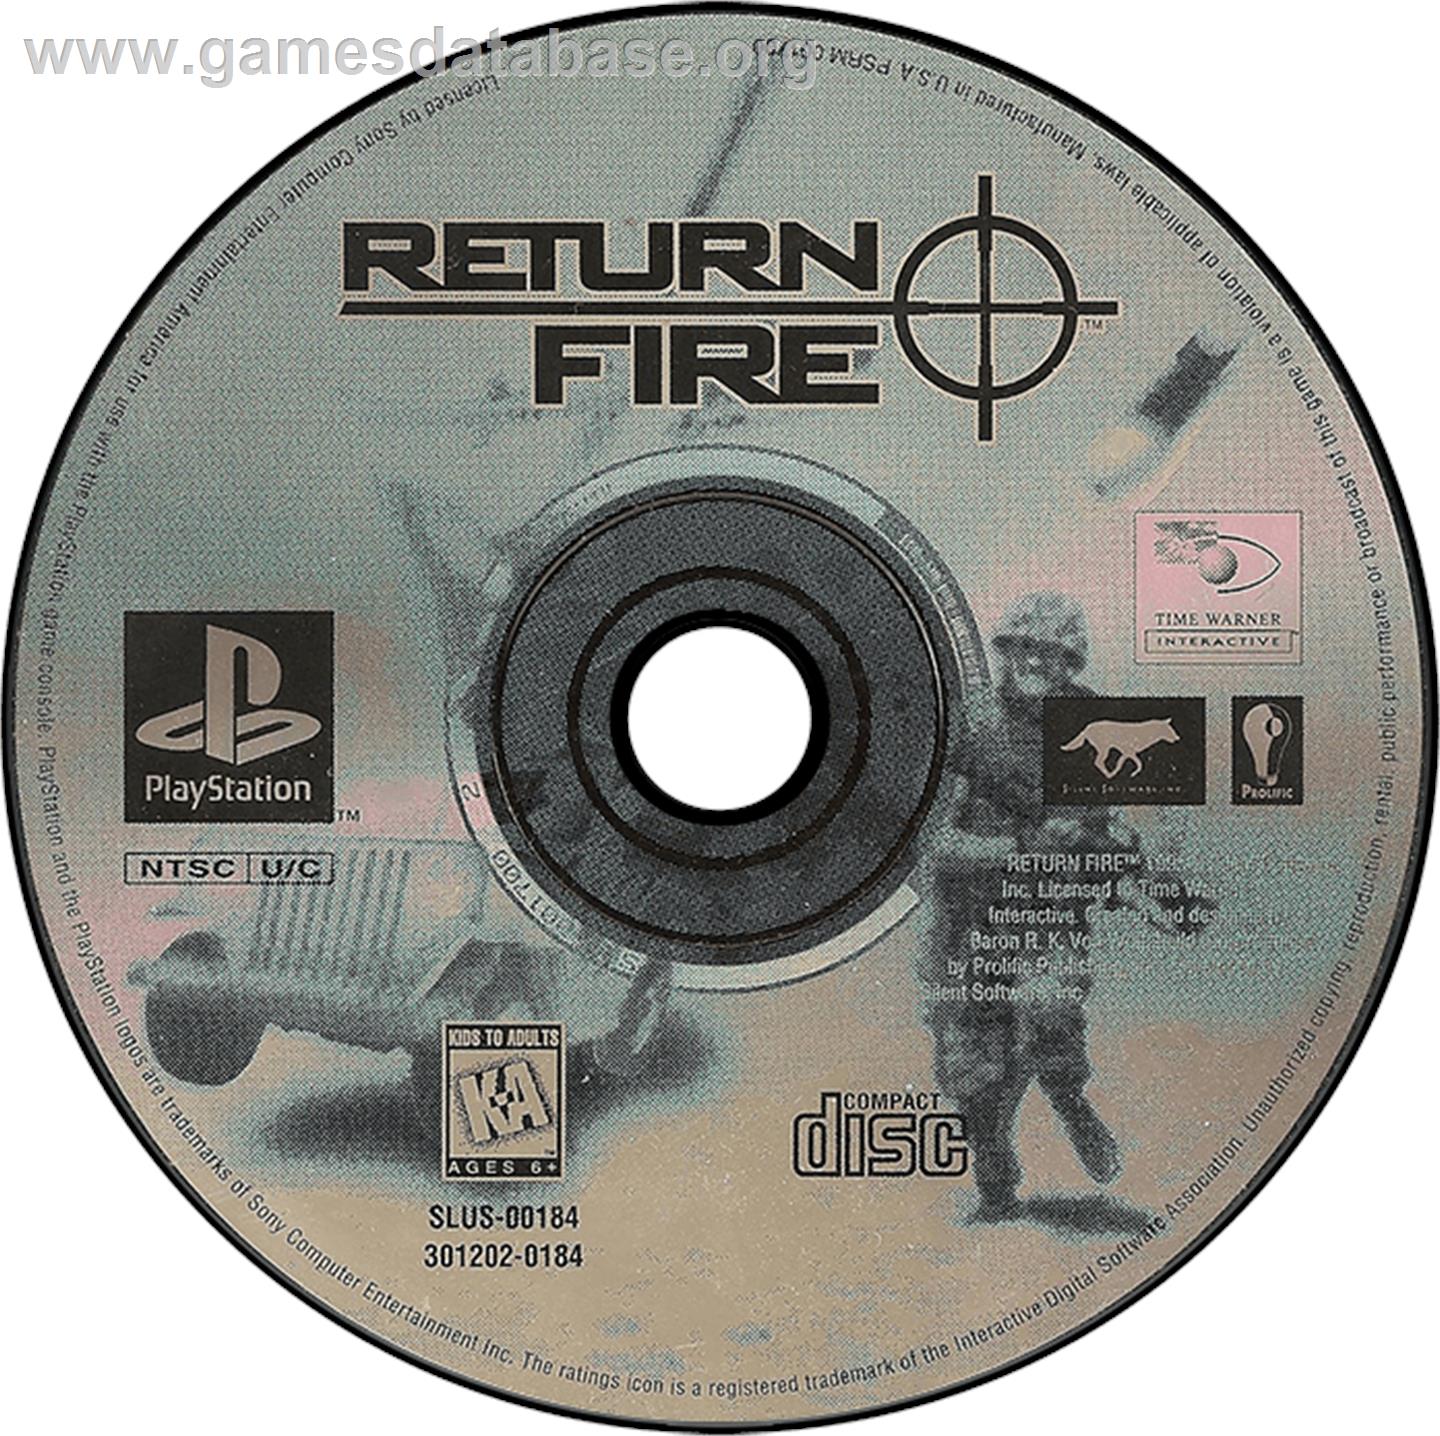 Return Fire - Sony Playstation - Artwork - Disc